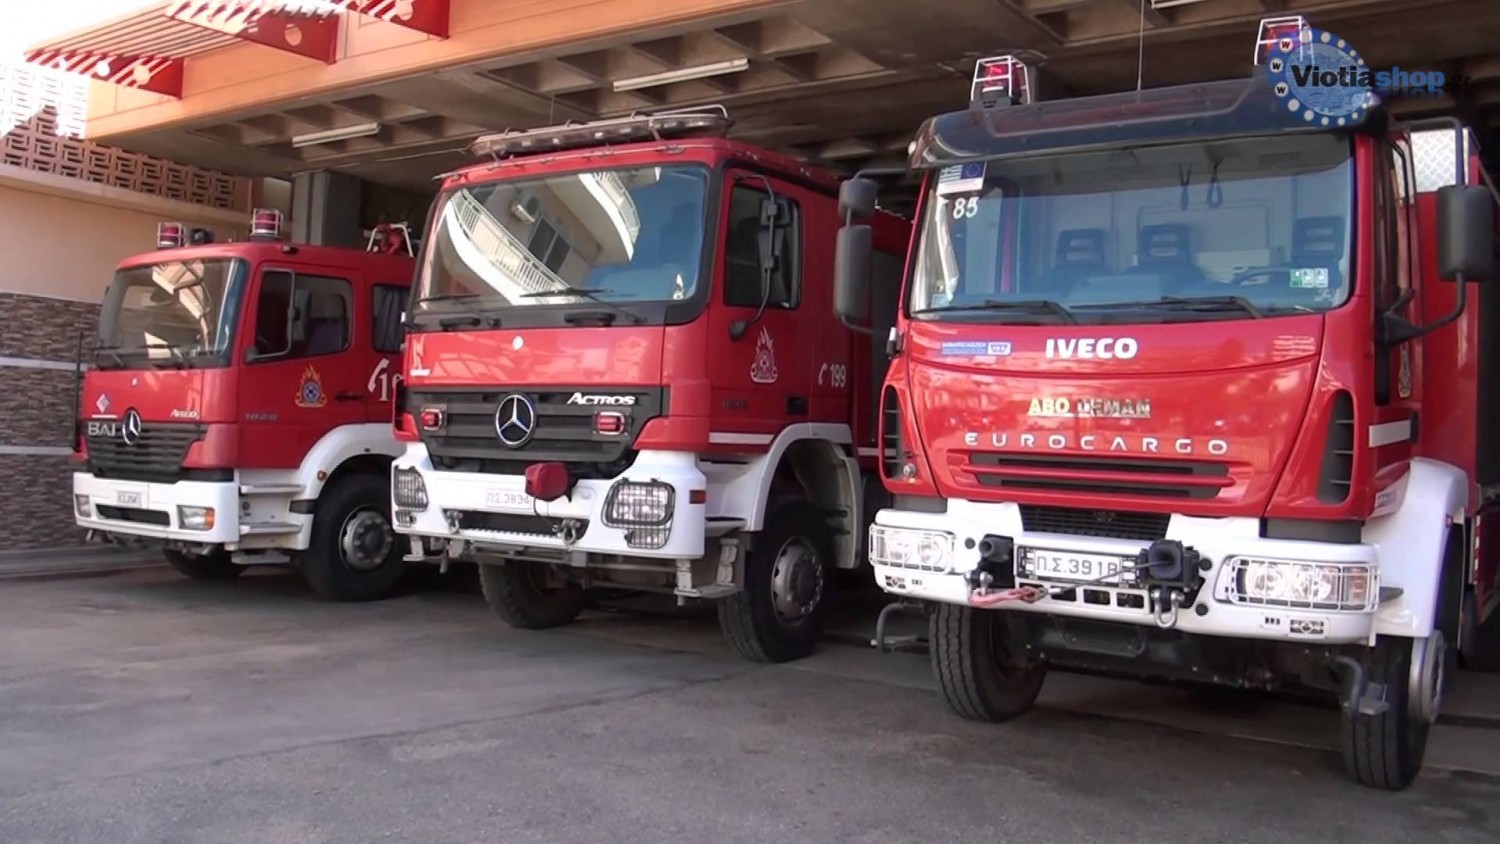 ΠΥΡΚΑΓΙΑ ΚΟΤΣΙΑΤΗ: Επιχειρούν 5 πυροσβεστικά οχήματα  - Ορατή η φωτιά απο τον αυτοκινητόδρομο